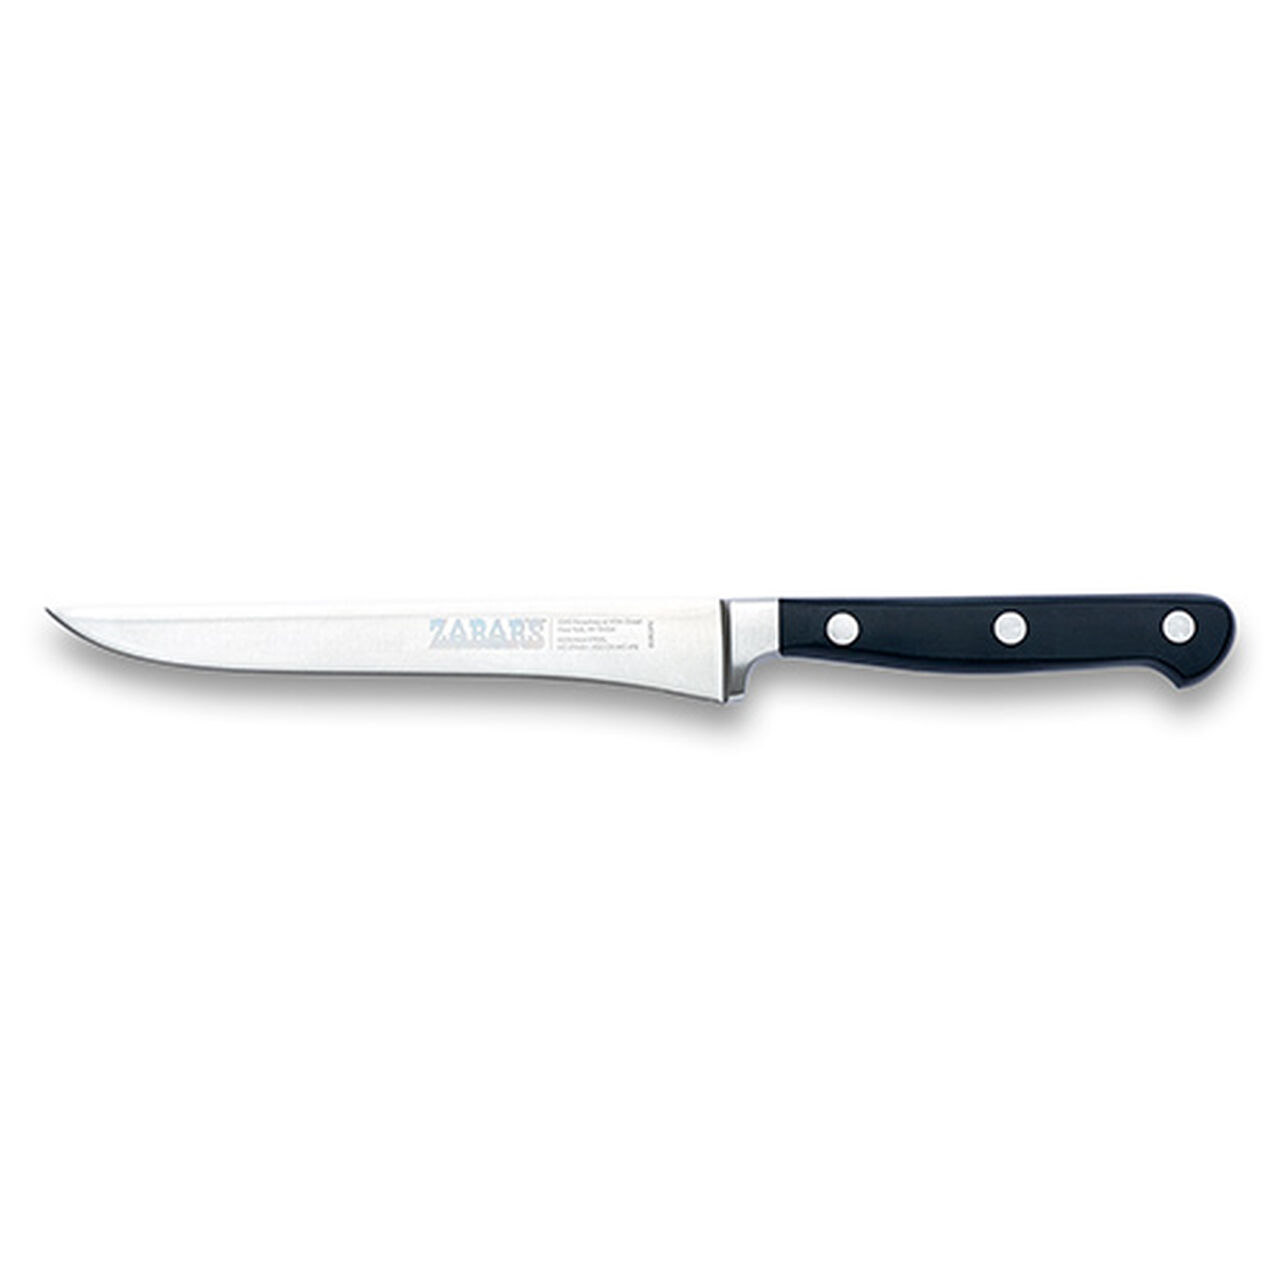 Zabar's Boning Knife 6" #2011.15, , large image number 0